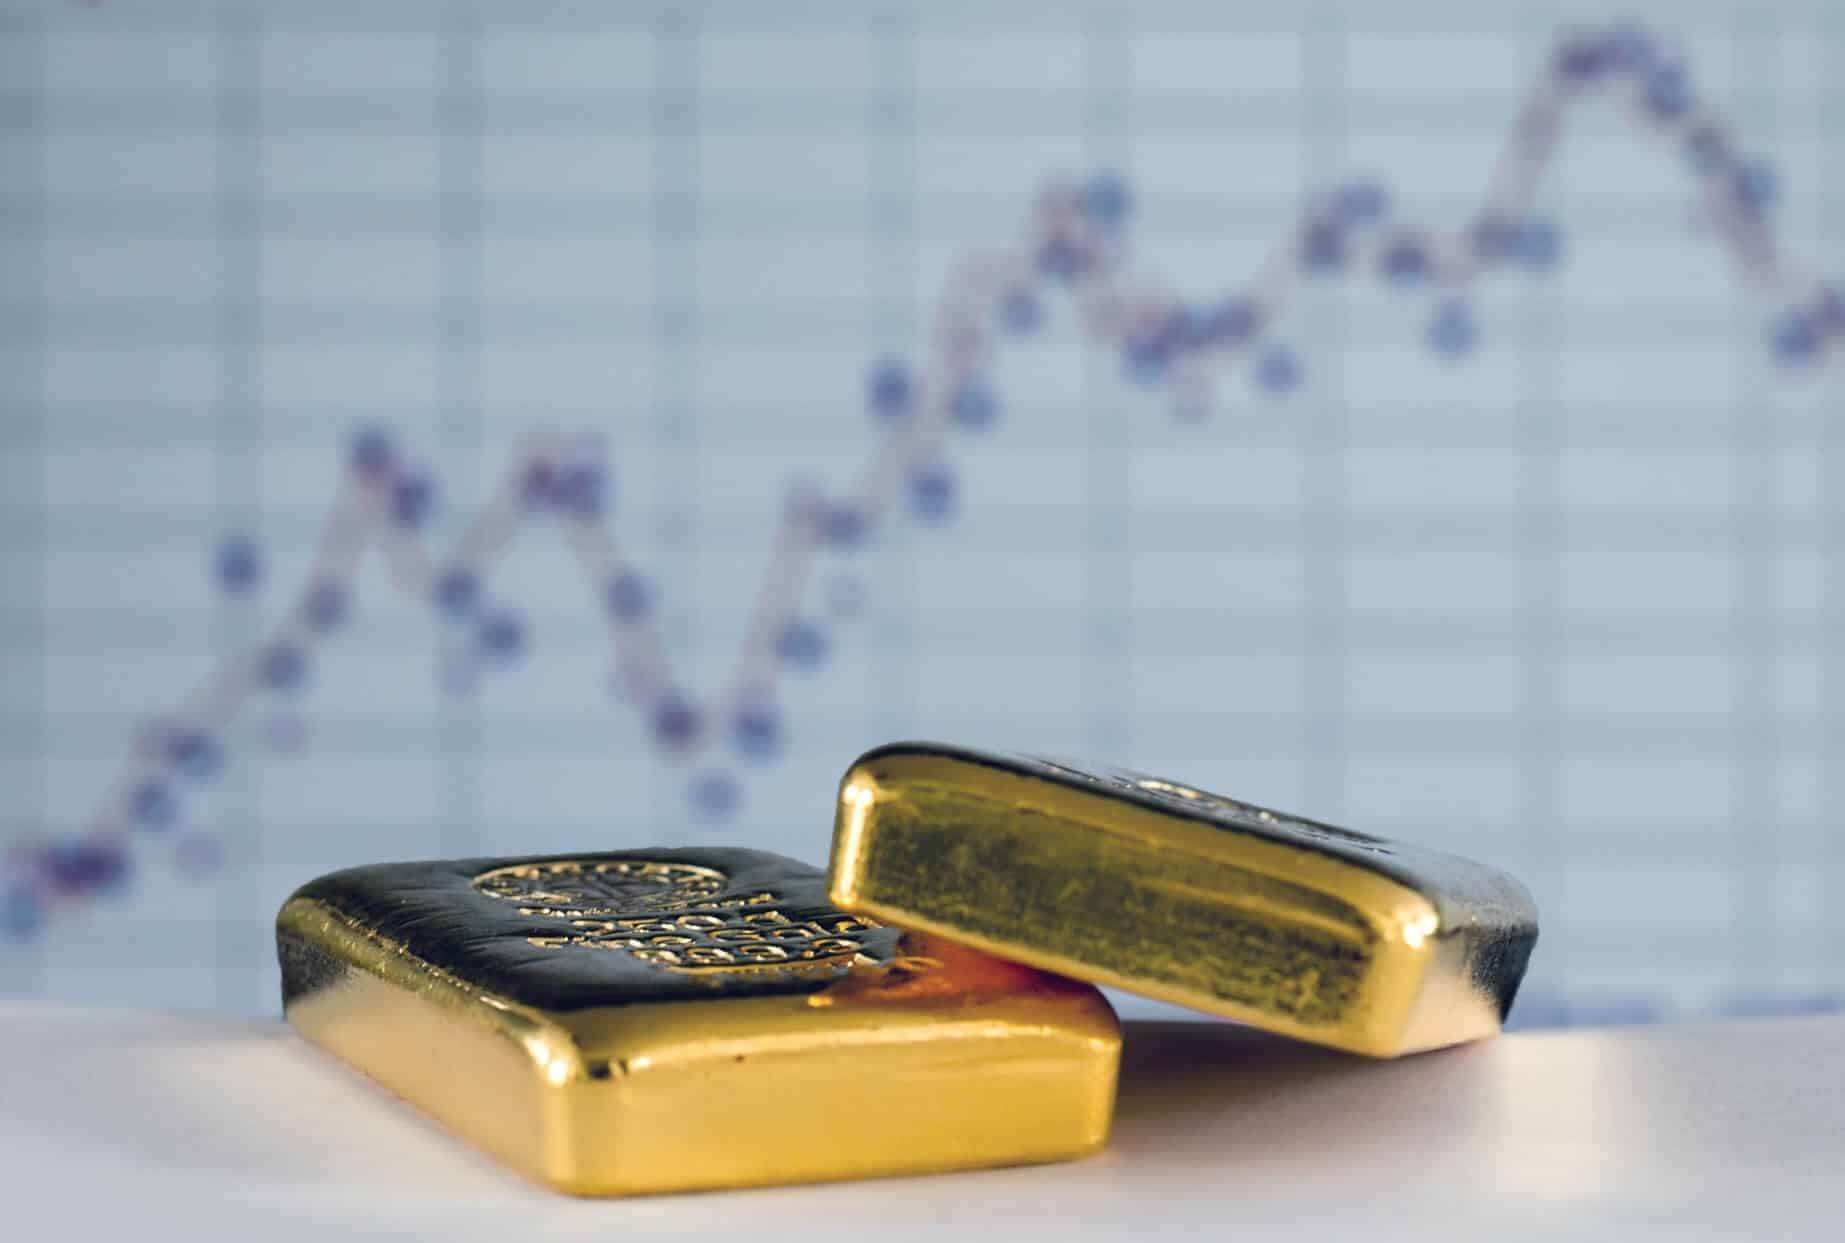 Цены на золото упали в преддверии торговой сделки